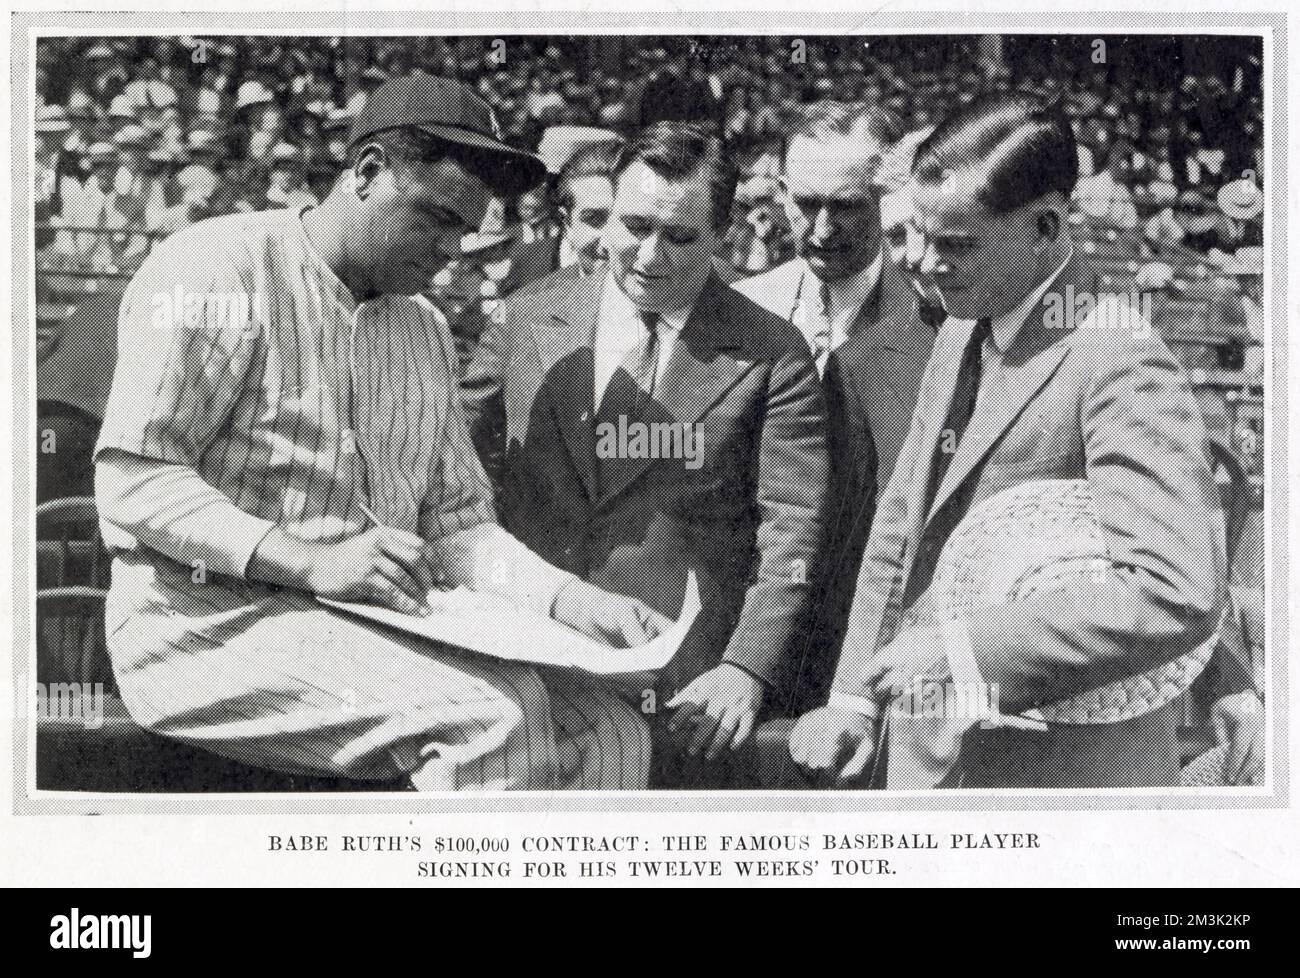 Babe Ruth (1895 - 1948), amerikanischer Baseballspieler, unterzeichnet einen $100.000-Dollar-Vertrag für eine 12-wöchige Tour. Stockfoto